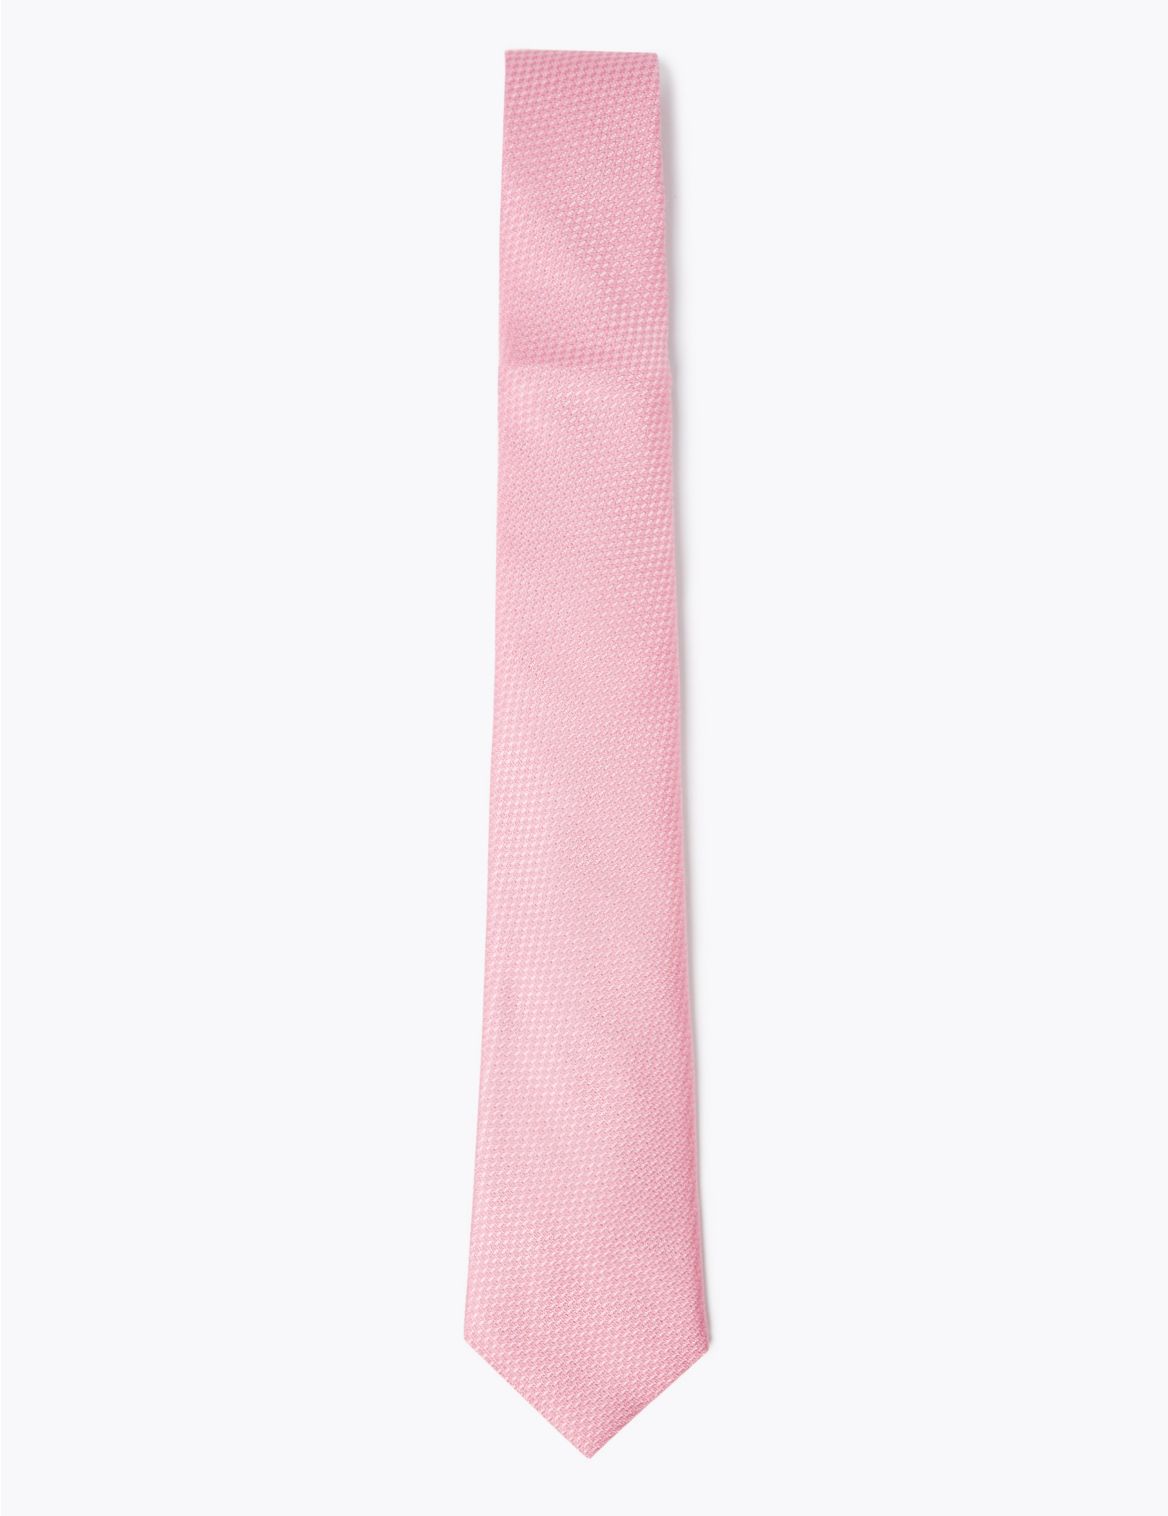 Textured Pure Silk Tie pink